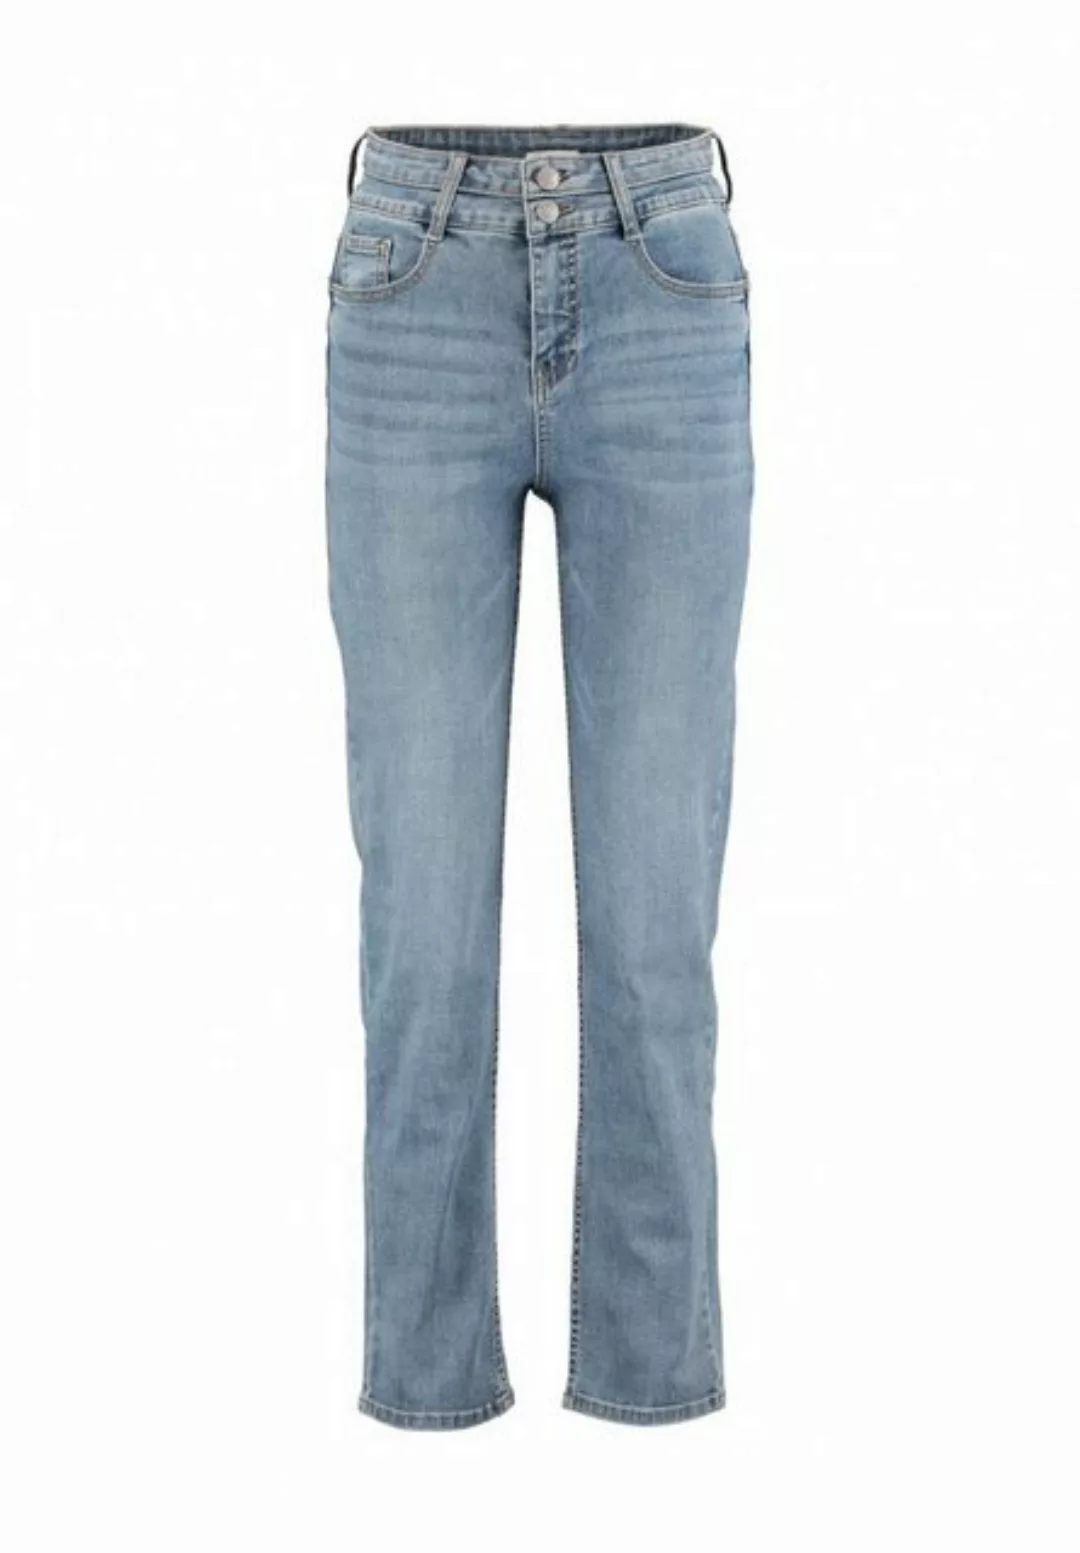 HaILY’S High-waist-Jeans Straight Jeans High Waist Denim Hose St44rady 6111 günstig online kaufen